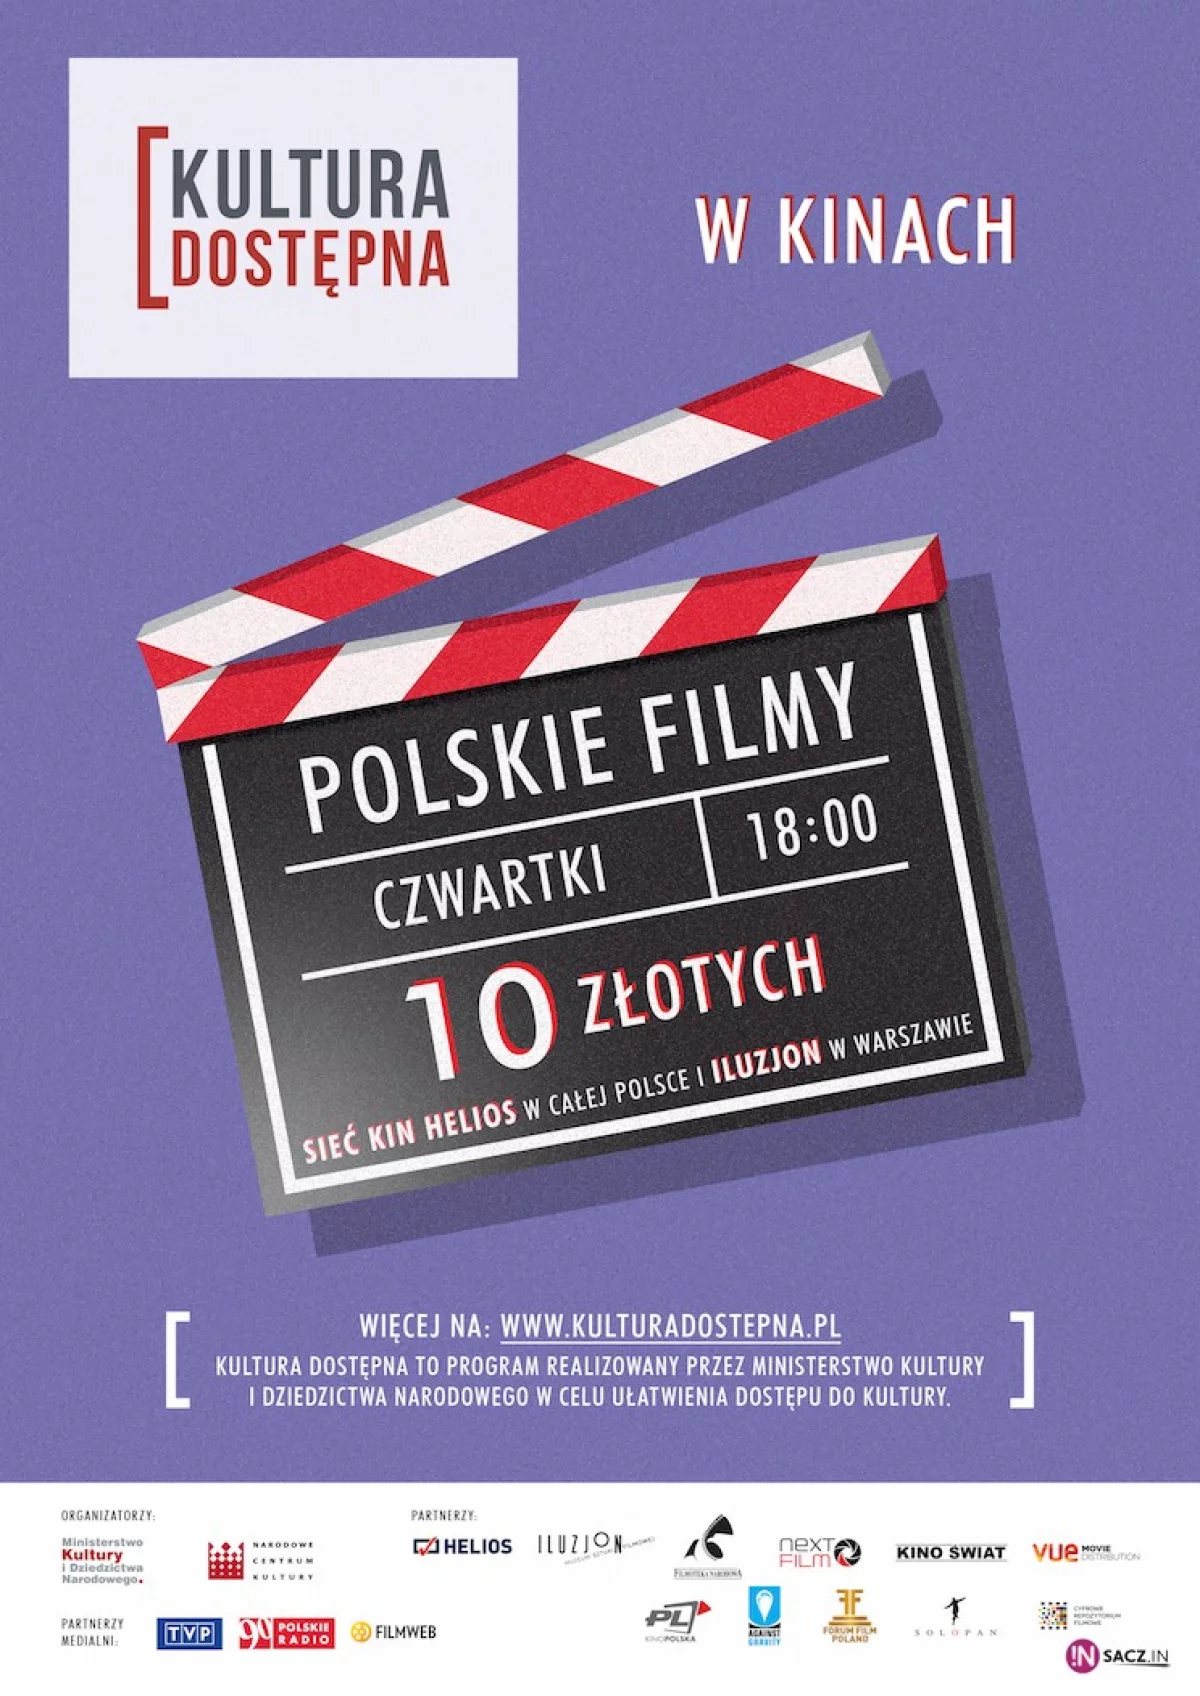 Polskie filmy za 10 zł